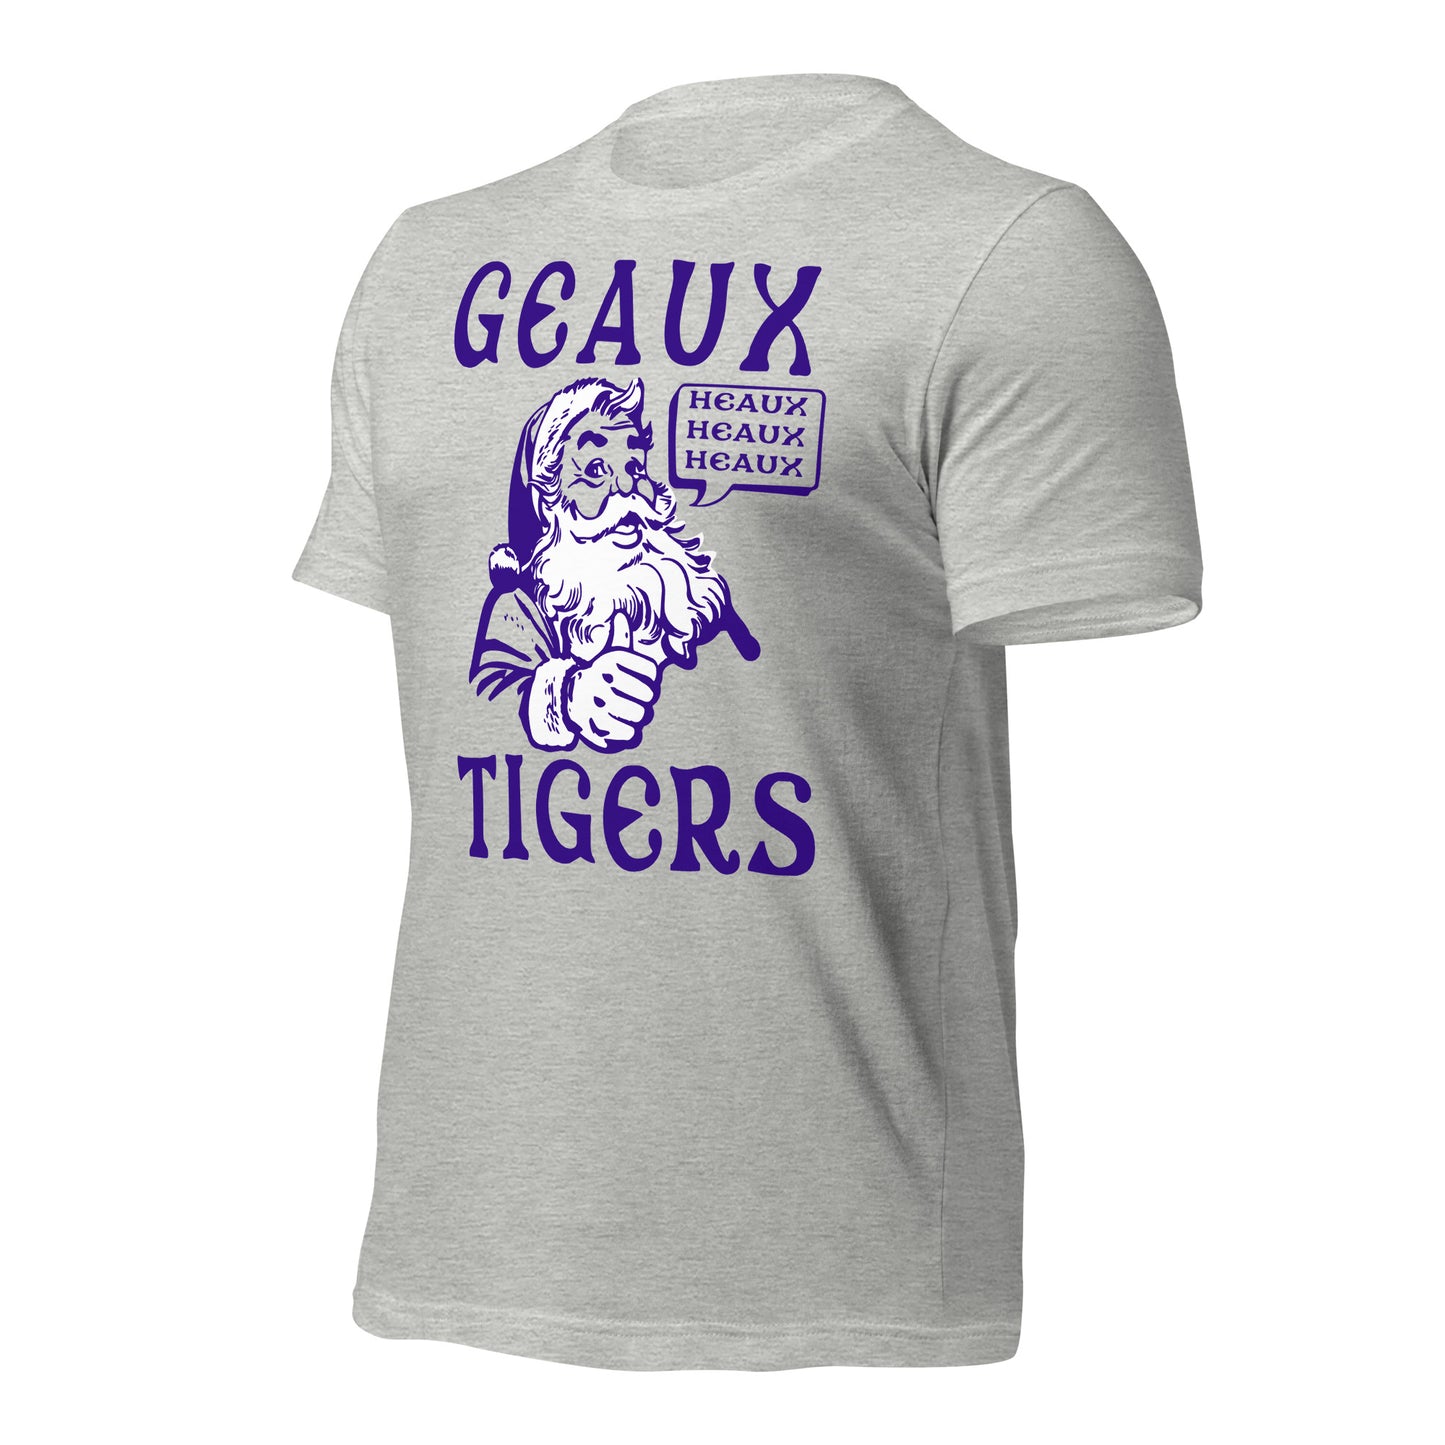 HEAX HEAUX HEAUX - CAJUN SANTA - BELLA+CANVAS - Unisex t-shirt